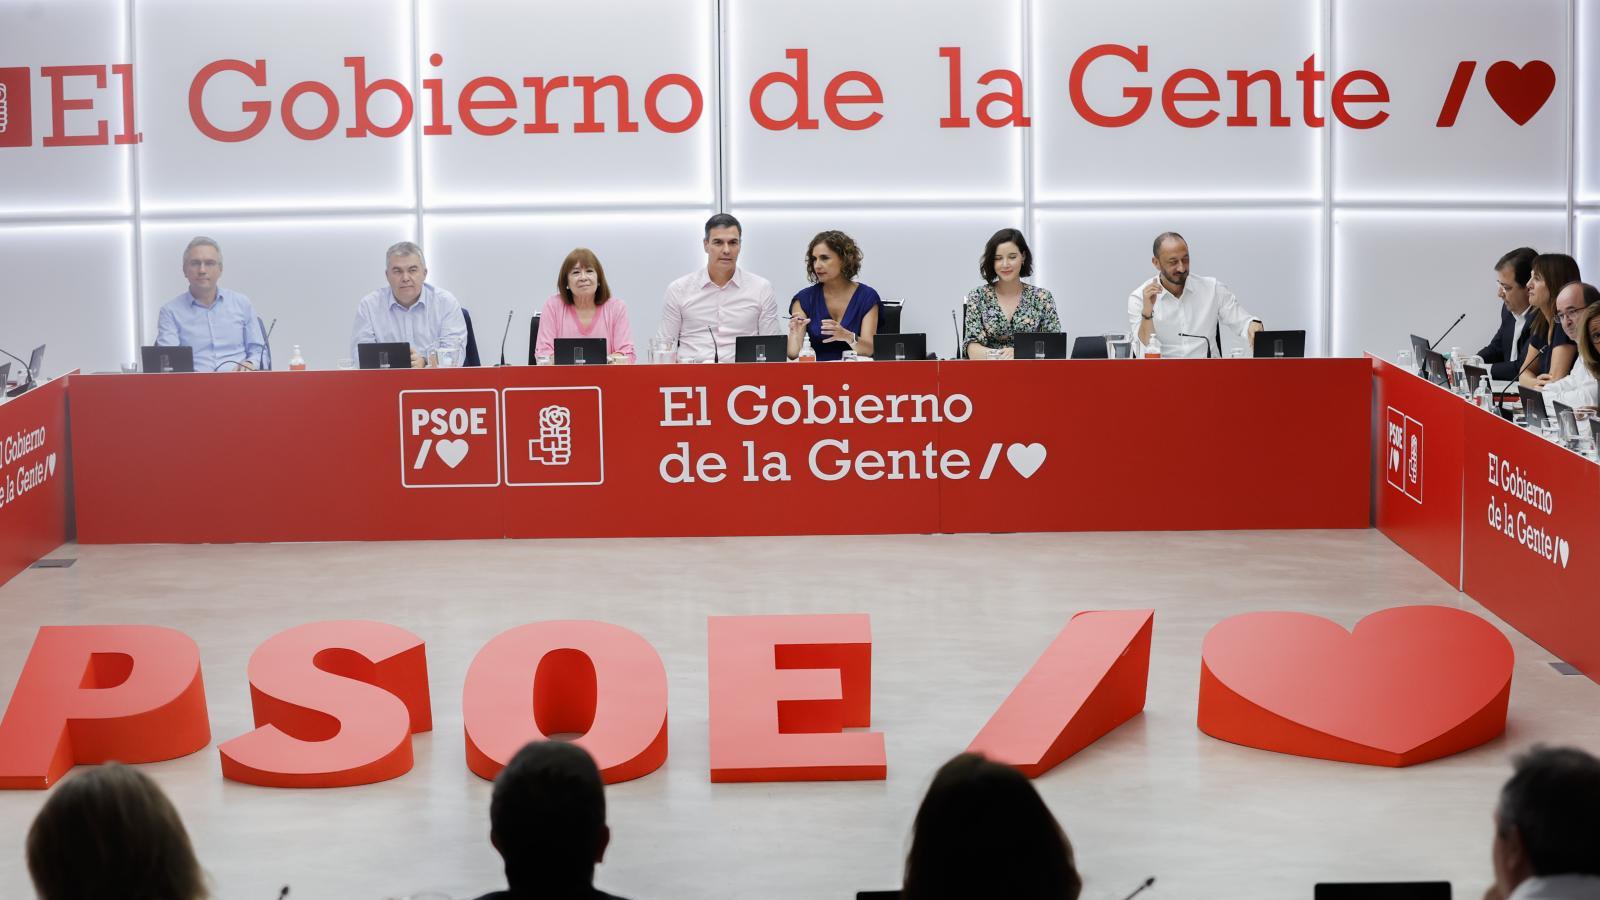 El PSOE ultima sus candidaturas con preocupación por la división en Podemos